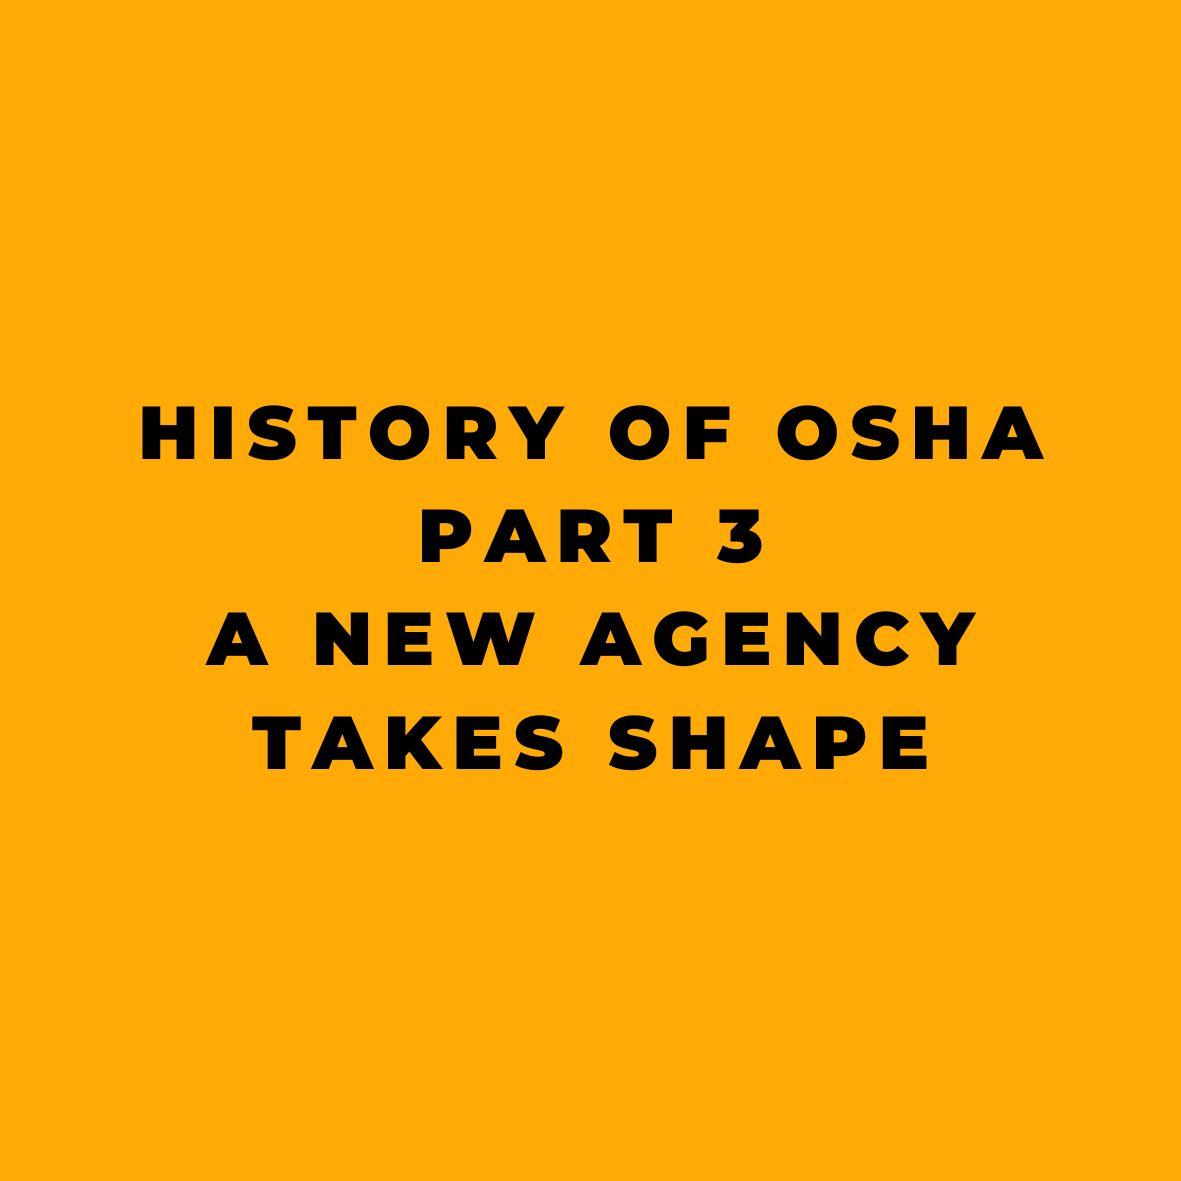 History of OSHA - Part 3 - A New Agency Takes Shape